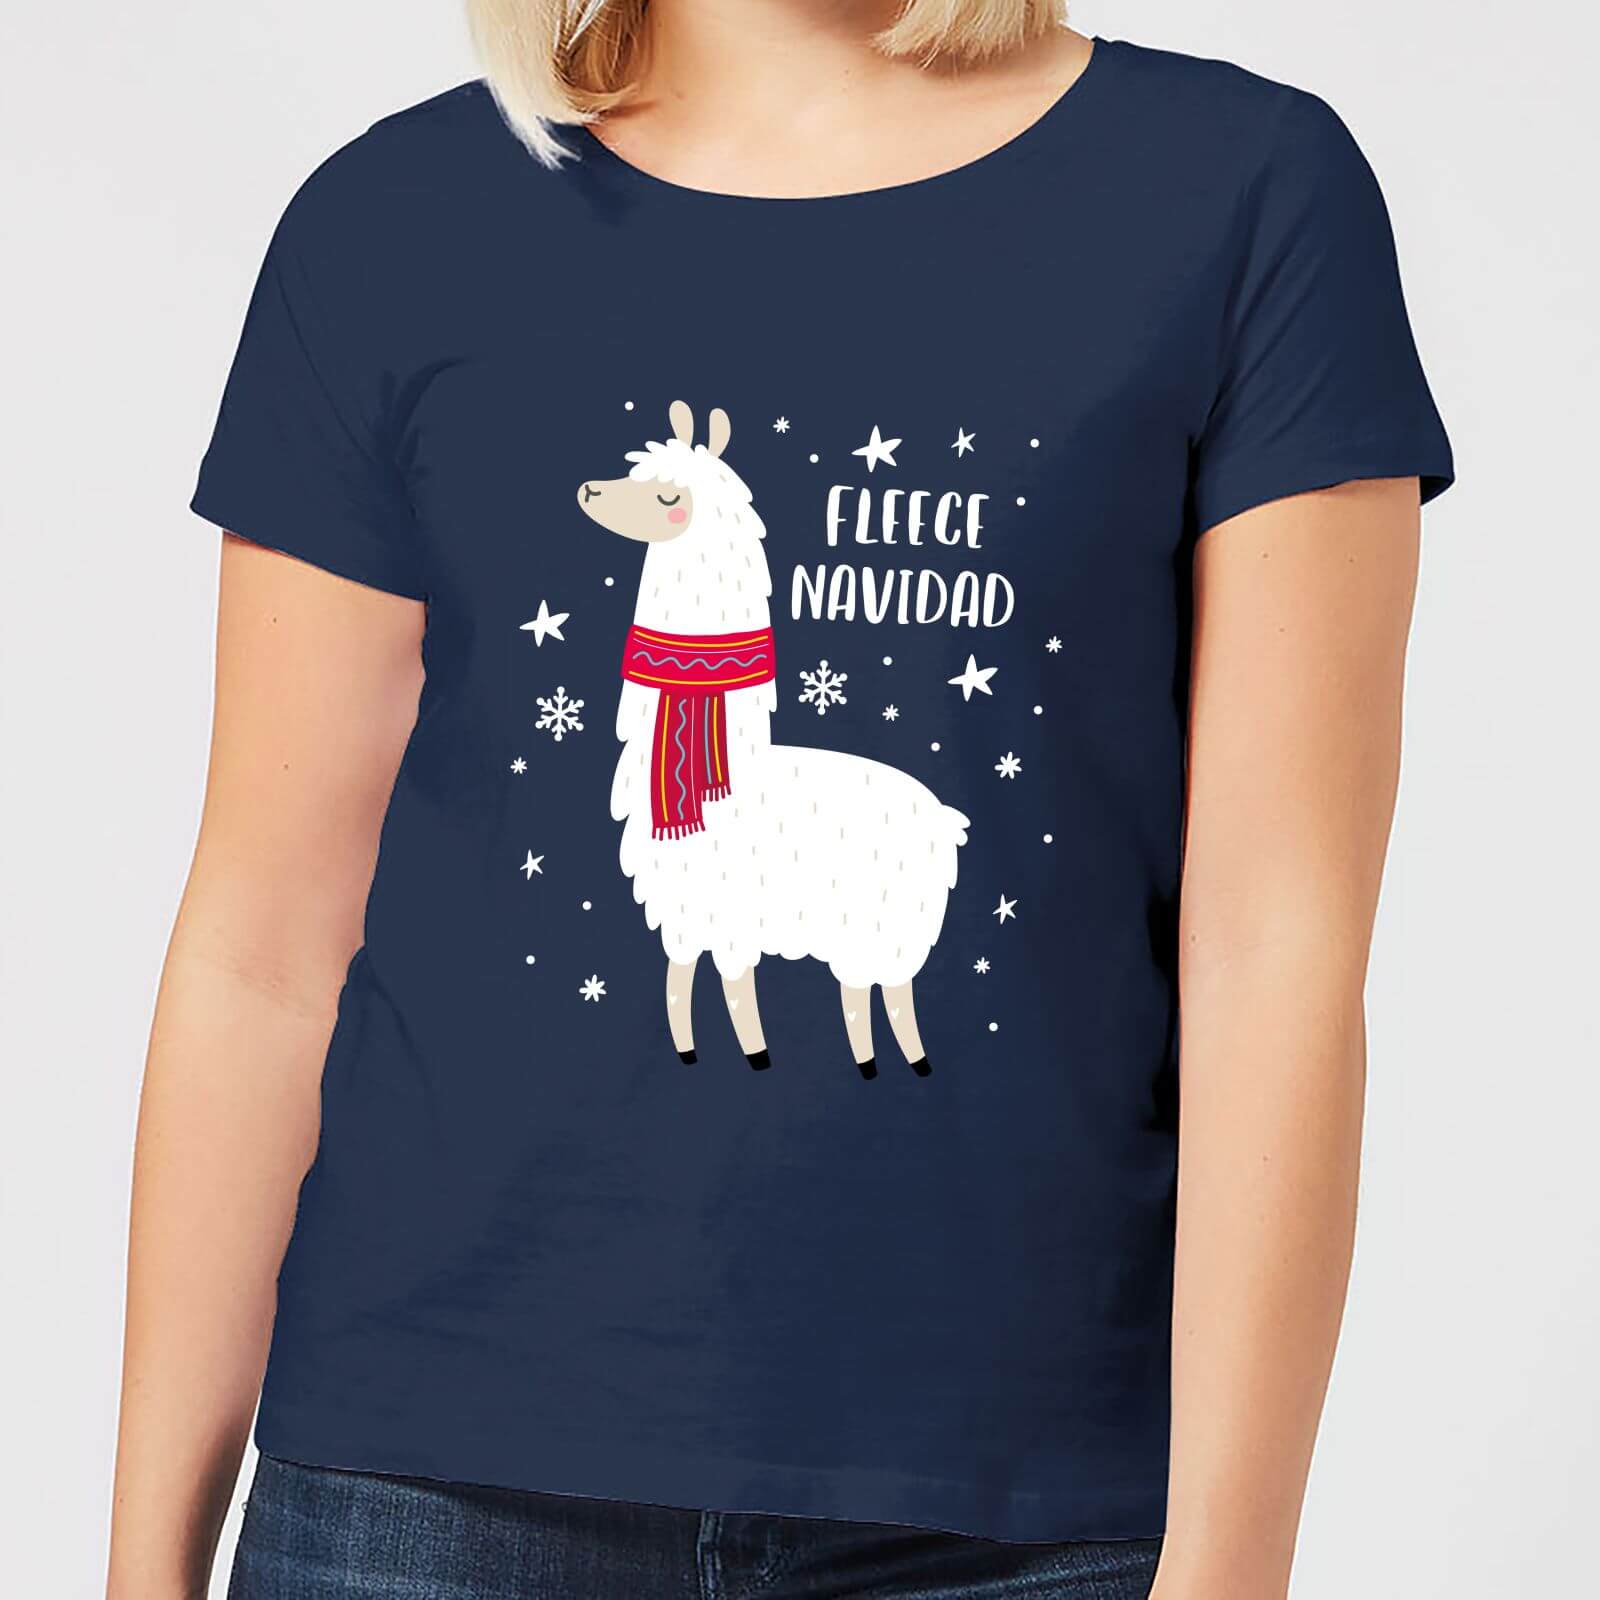 Fleece Navidad Women's Christmas T-Shirt - Navy - S